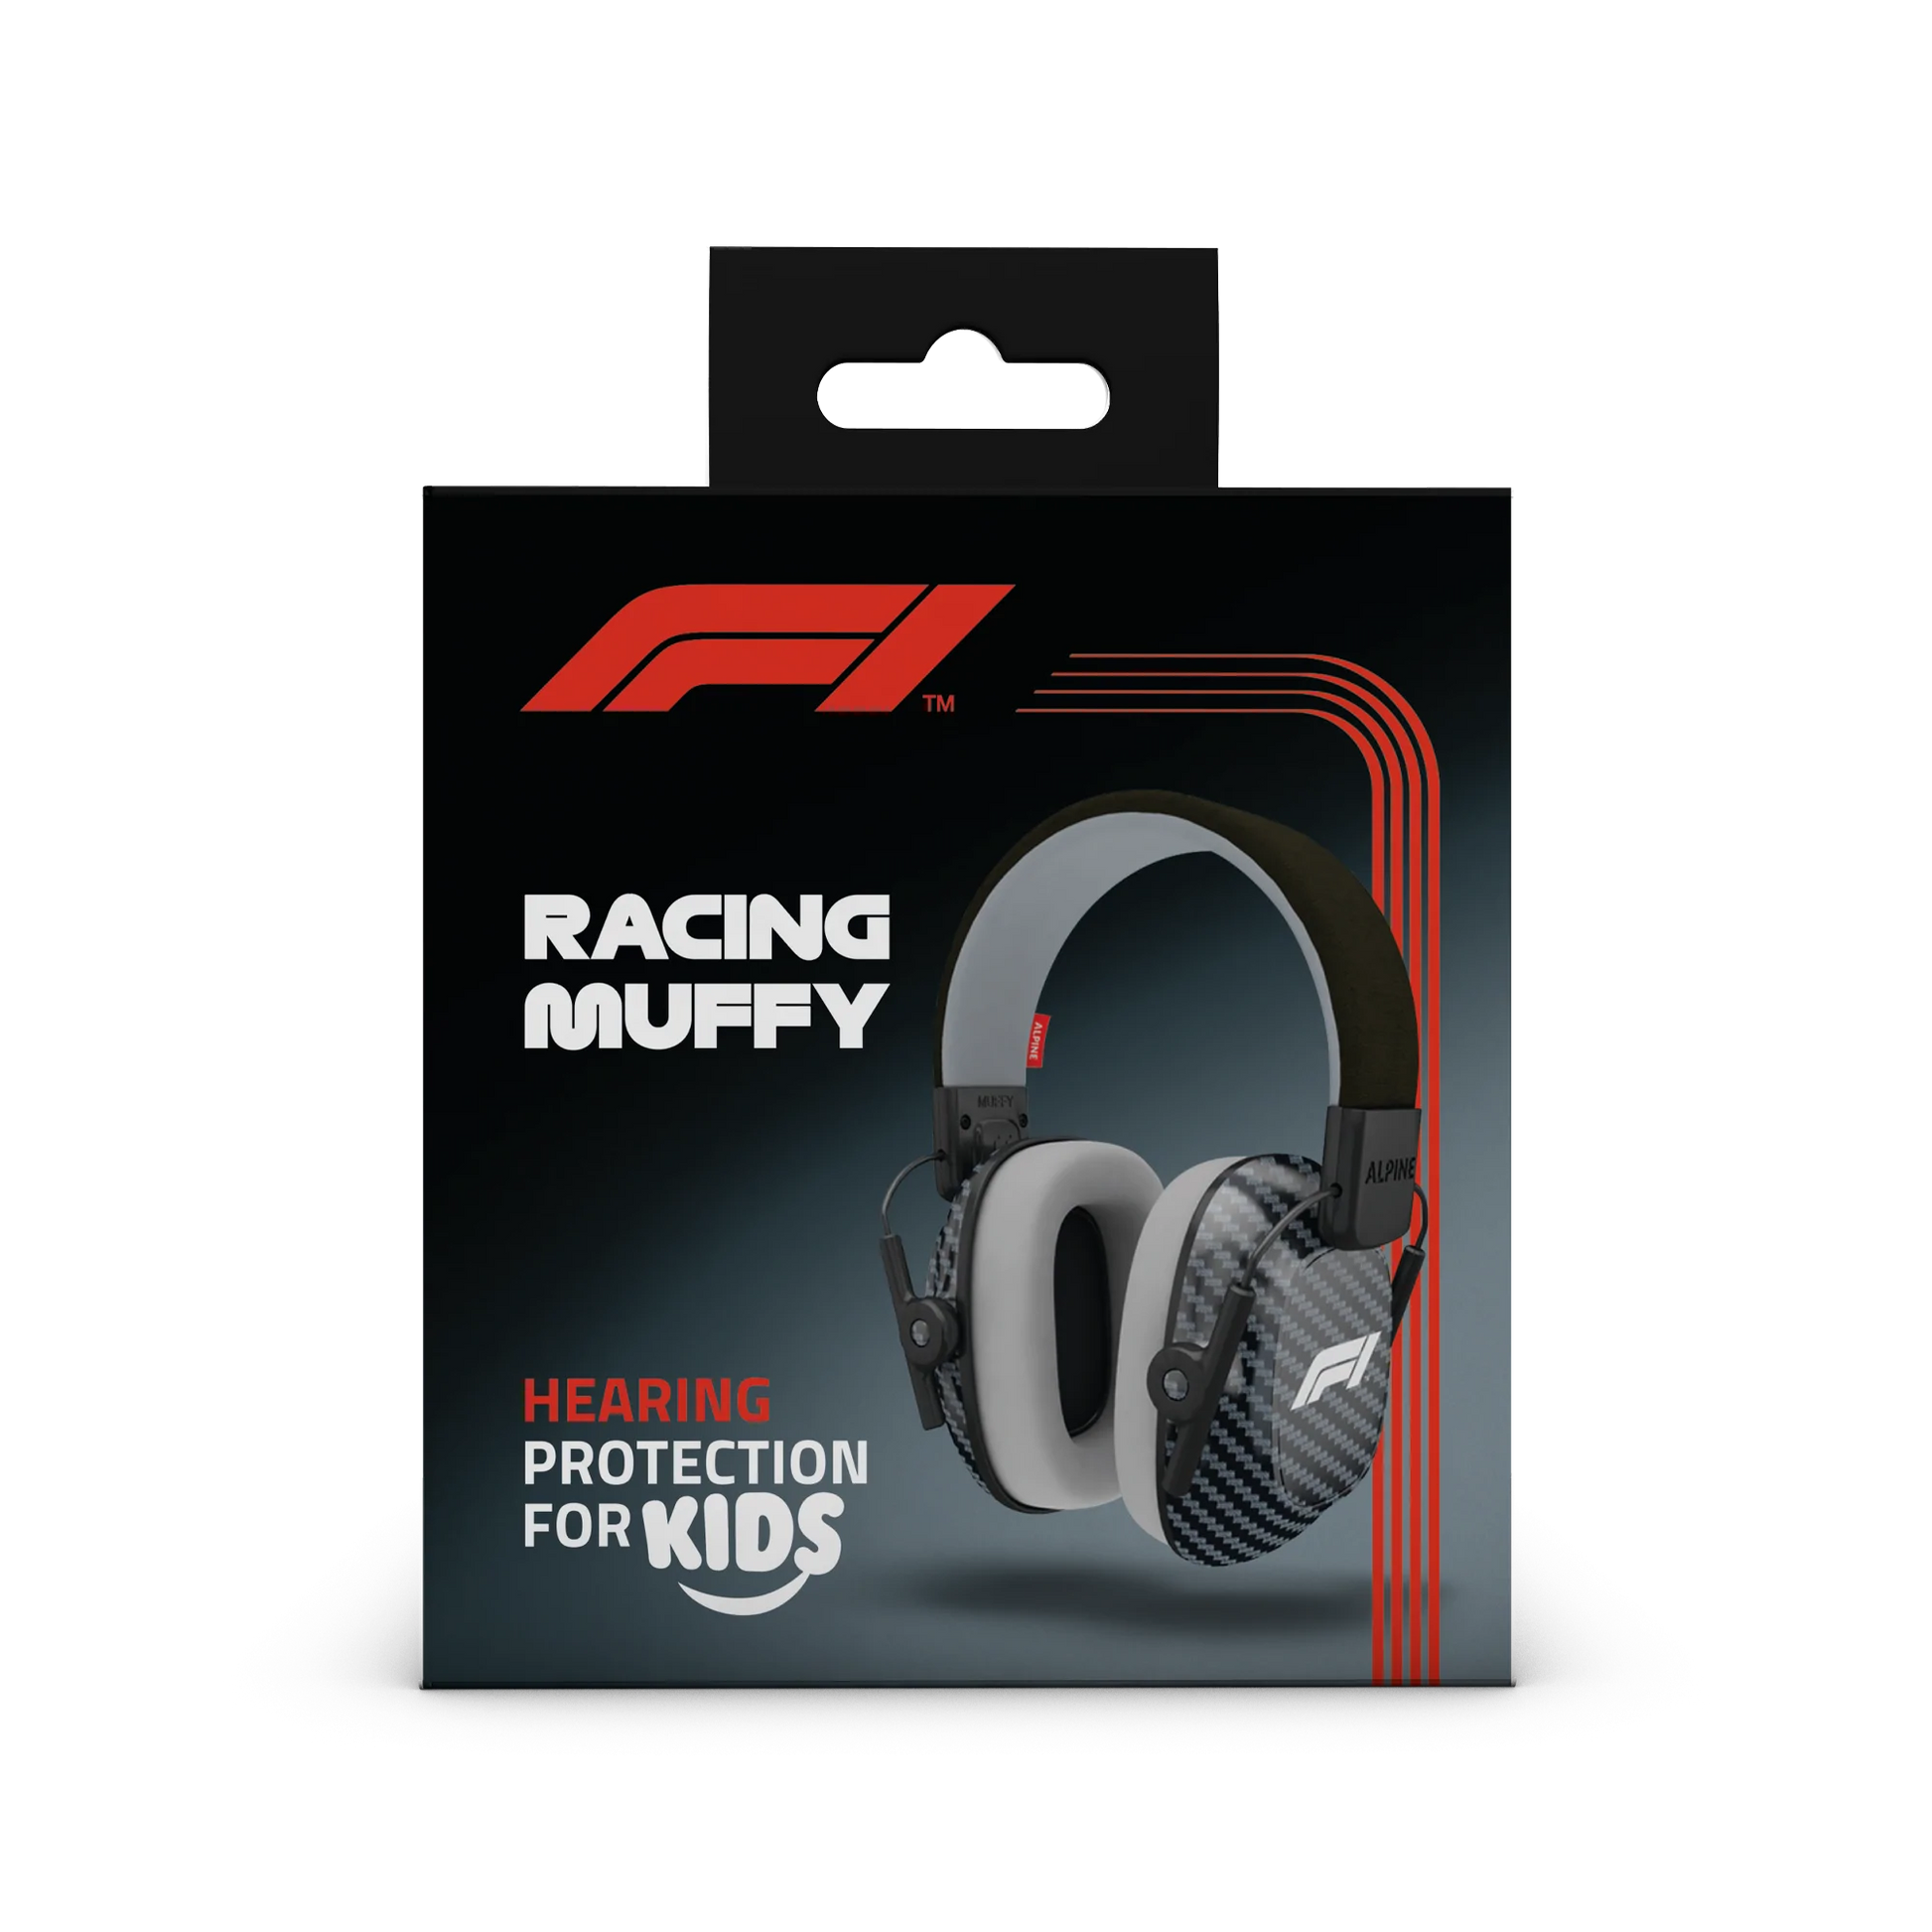 Racing Muffy Formula 1® - Alpine F1 Kinder Koptelefoon voor geluidsbescherming tijdens uw favoriete races